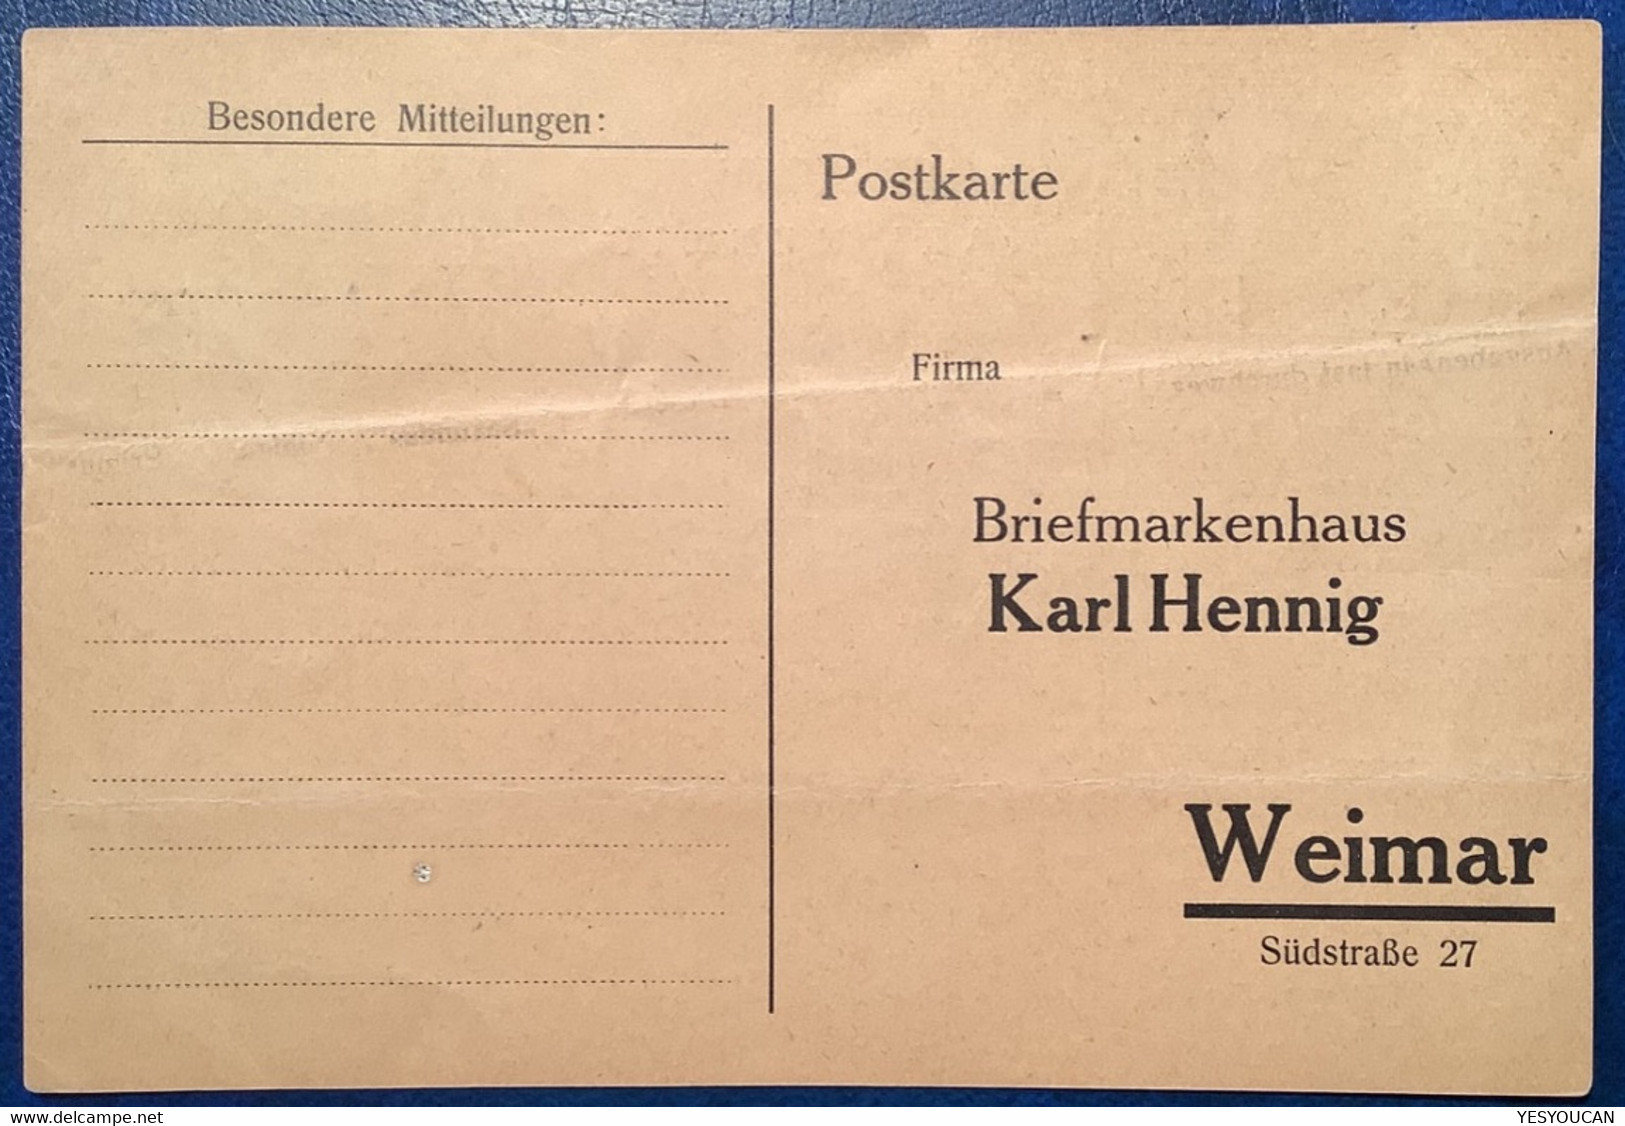 KARL HENNIG WEIMAR BRIEFMARKENHÄNDLER Werbung-Aufdruck 1923 D.R Infla (German Stamp Dealer Publicity Label Germany - Neufs